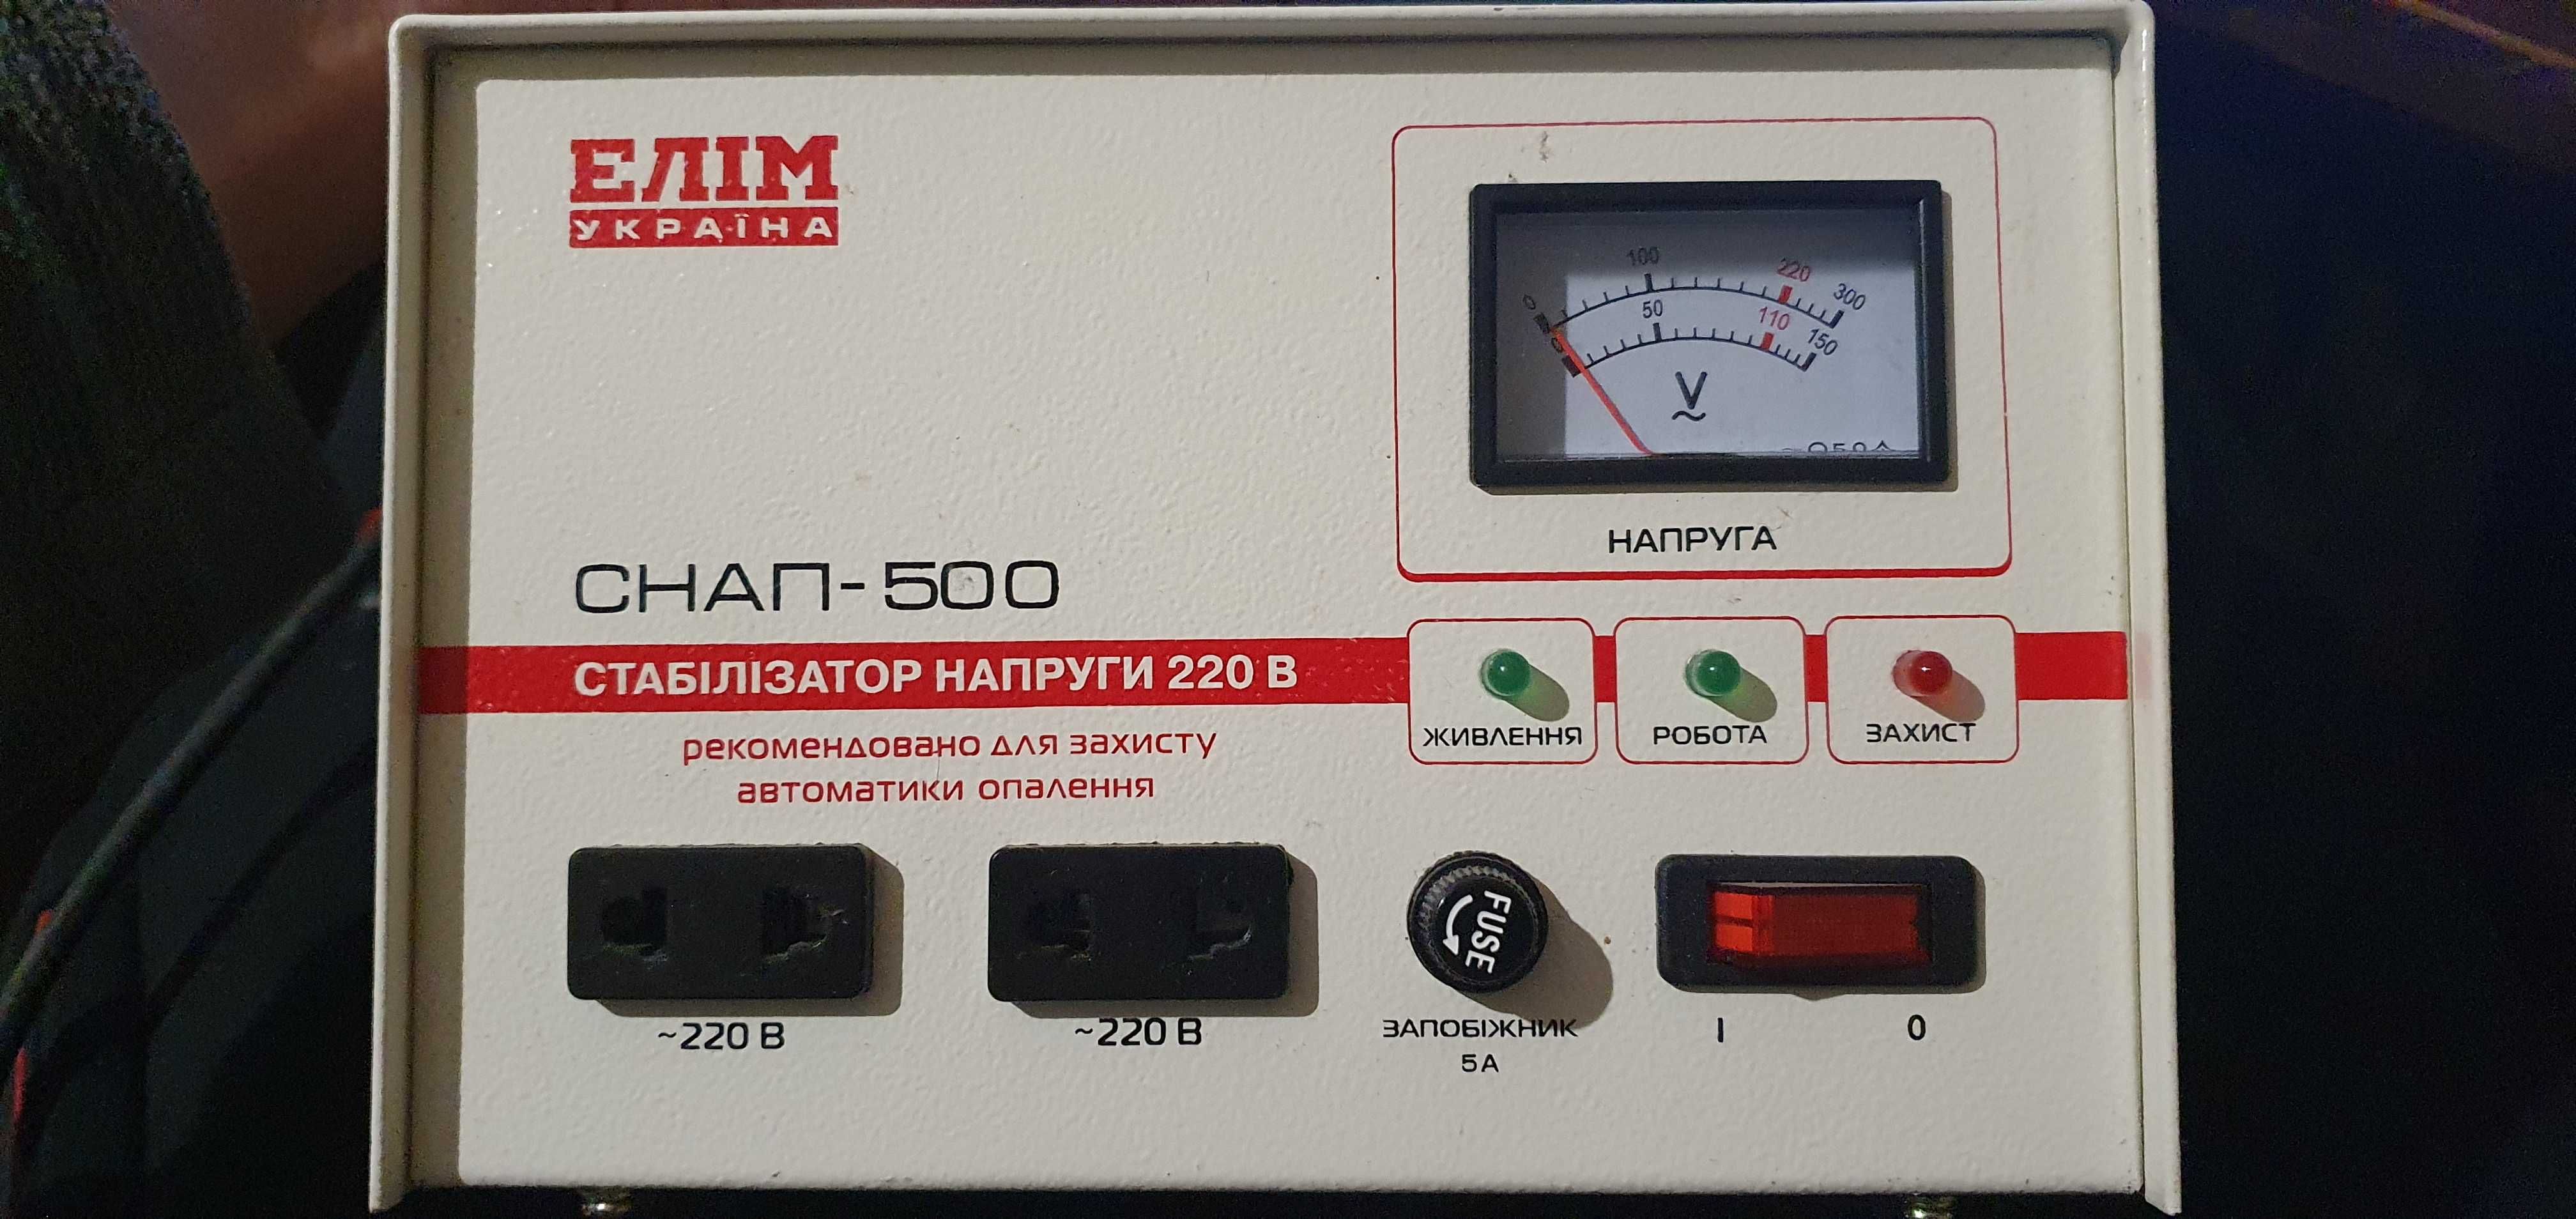 Стабилизатор напряжения ЕЛІМ УКРАЇНА, СНАП-500